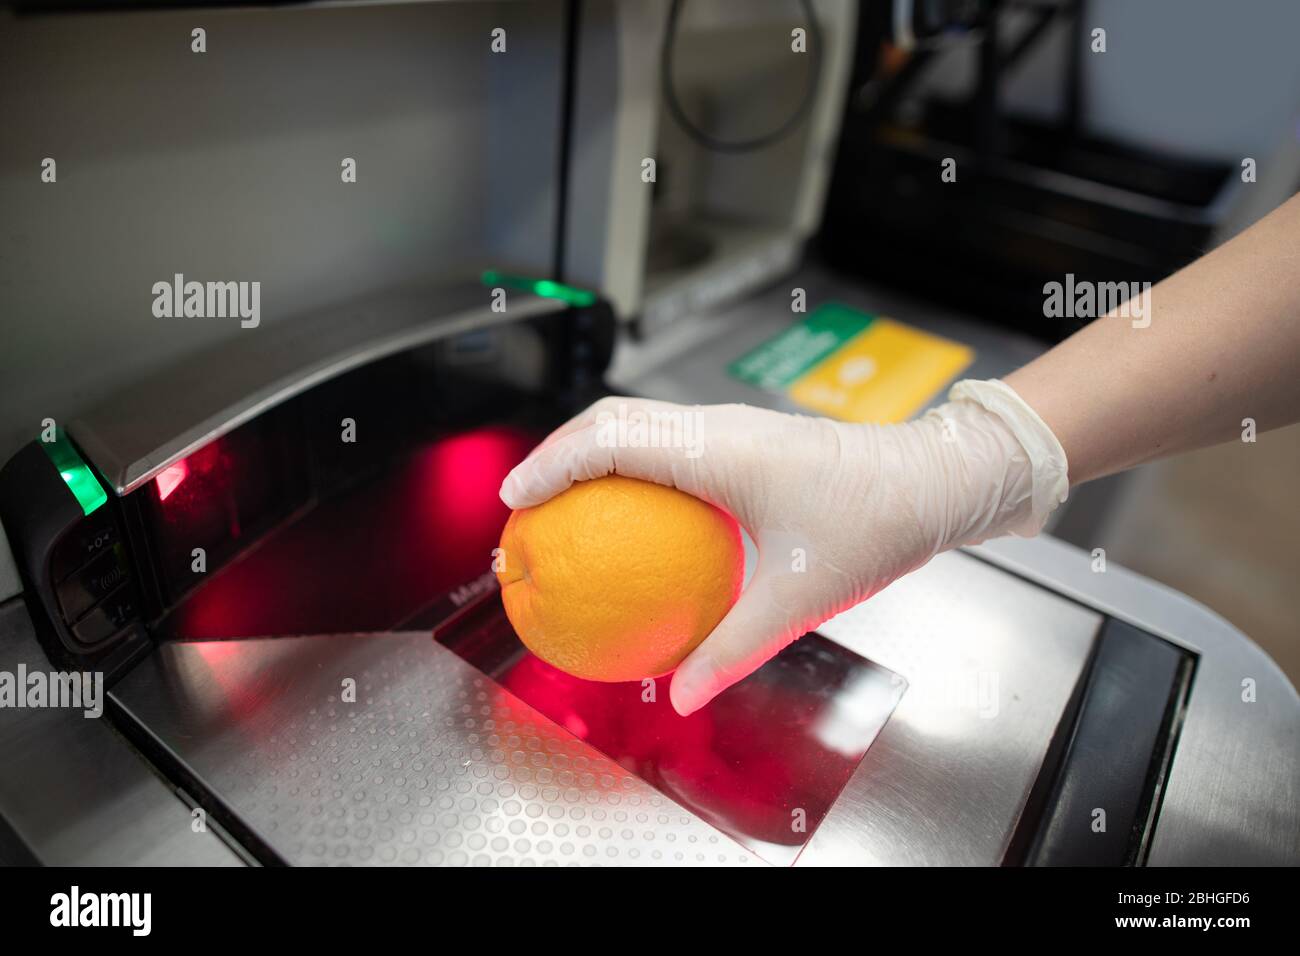 Une main dans un gant en latex jetable qui balaie une orange à un poste de caisse automatique d'épicerie. Les gens portent des gants pour se protéger contre le covid Banque D'Images